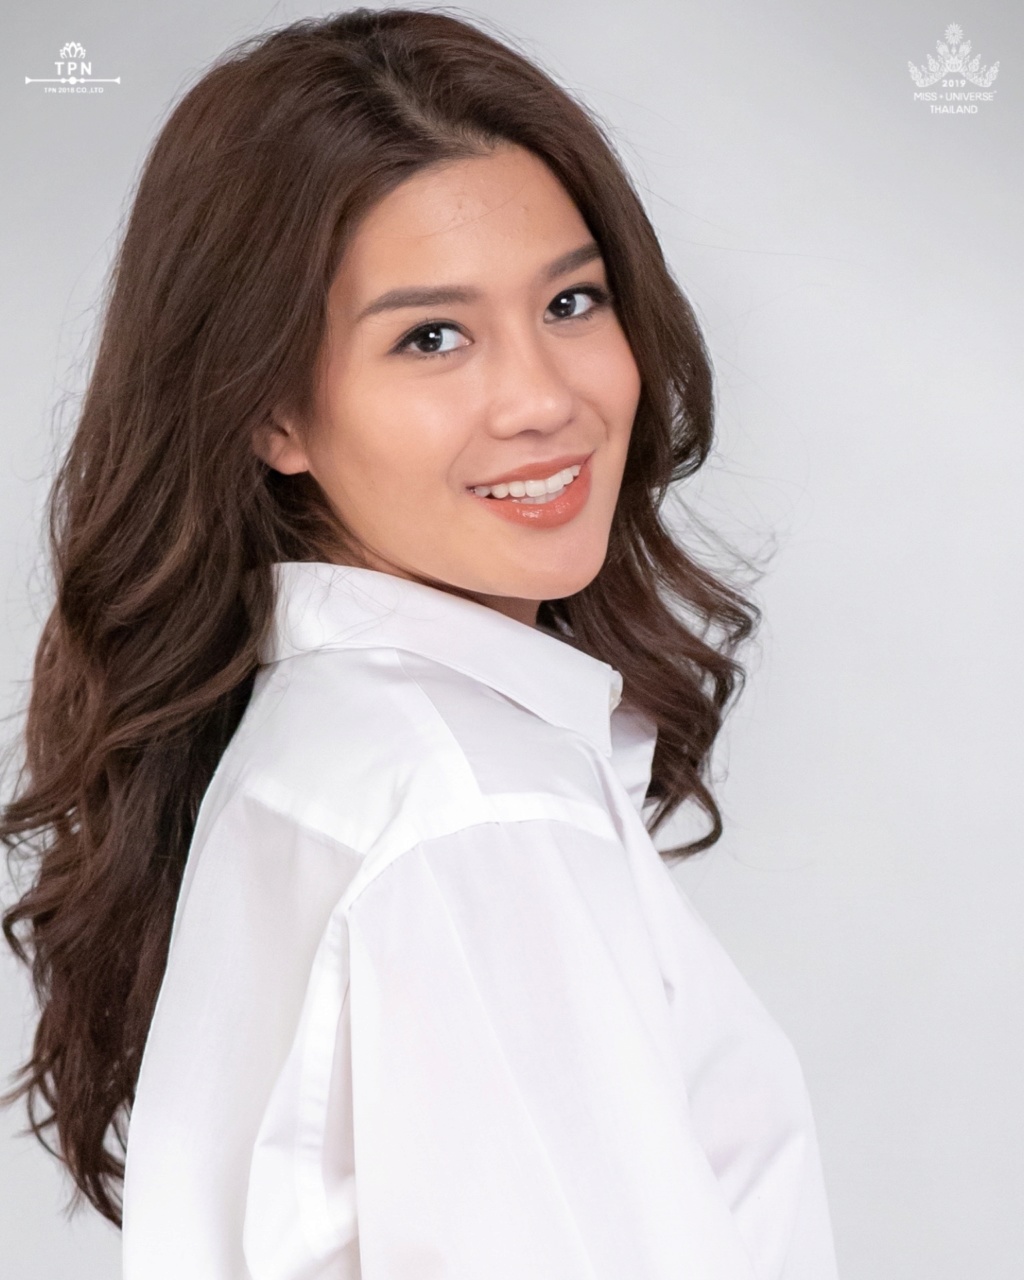 Miss Universe THAILAND 2019 - PORTRAITS!  - Page 2 2894